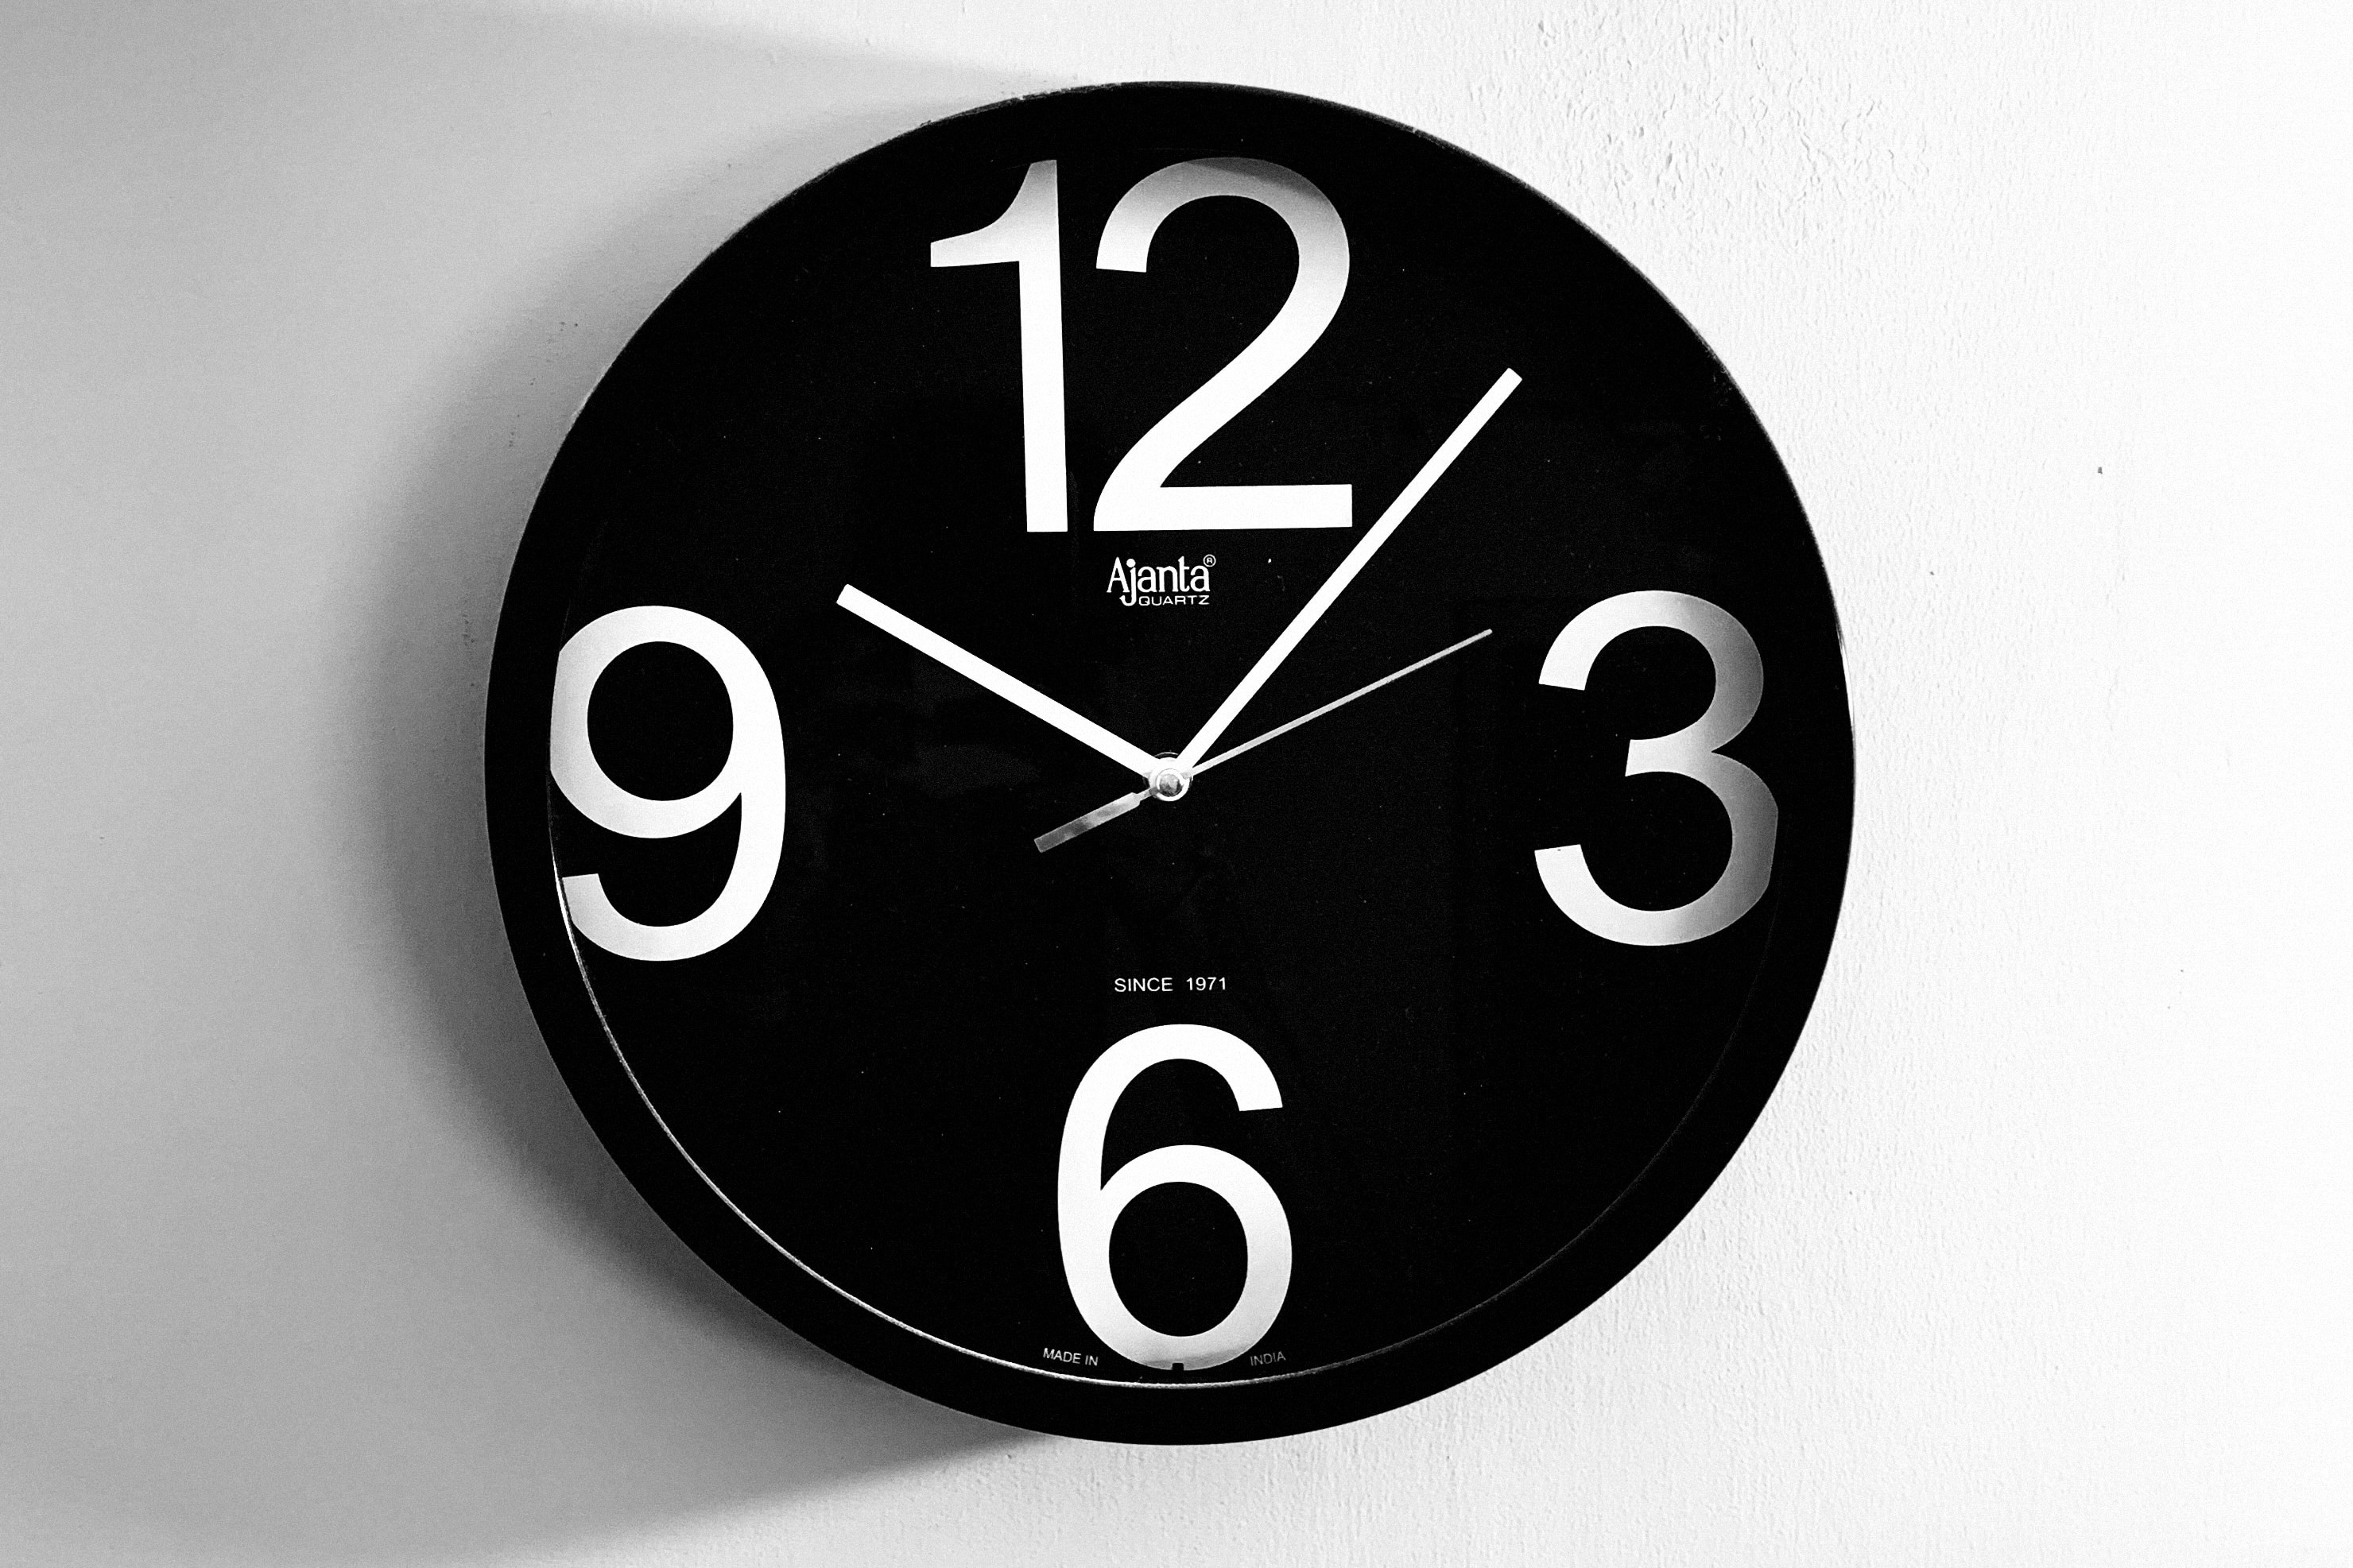 Eine schwarze Uhr mit weißen Zahlen und Zeigern, die 10:05 zeigen.